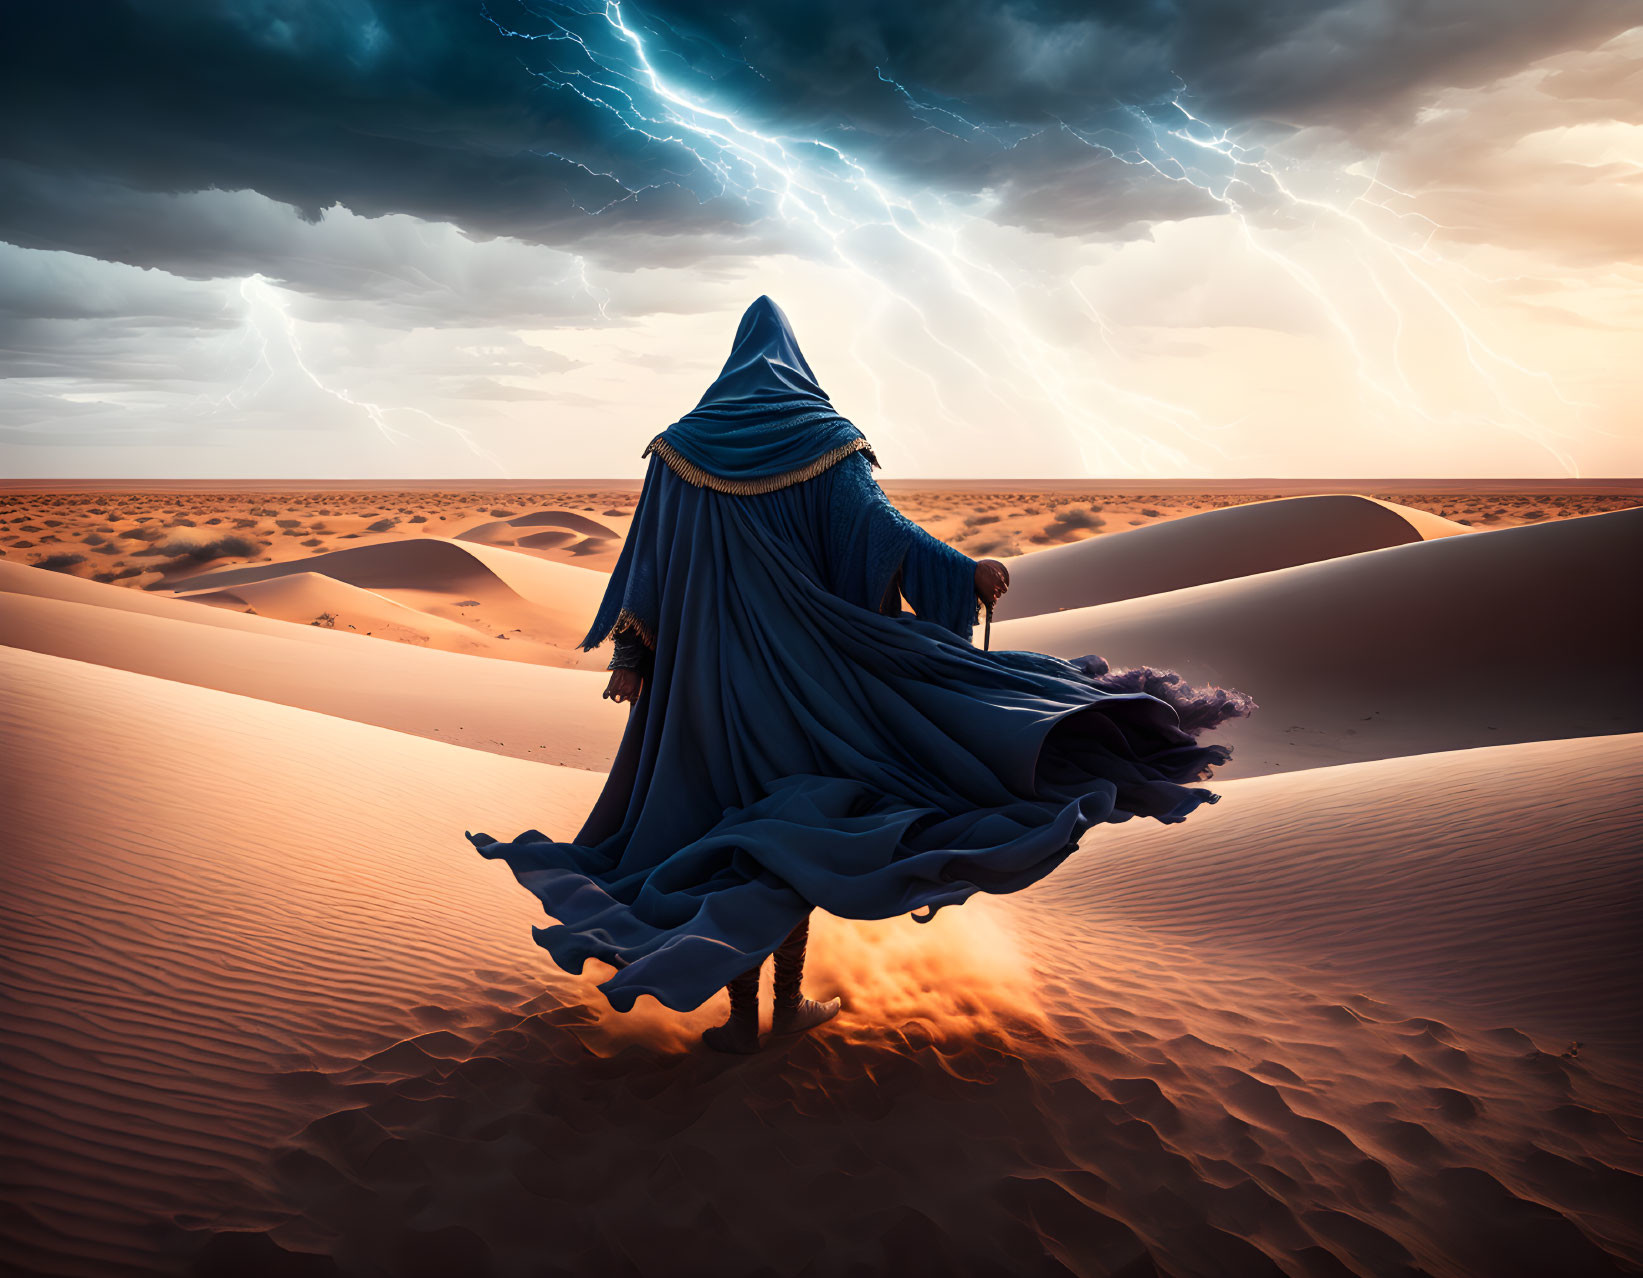 Wizard in desert